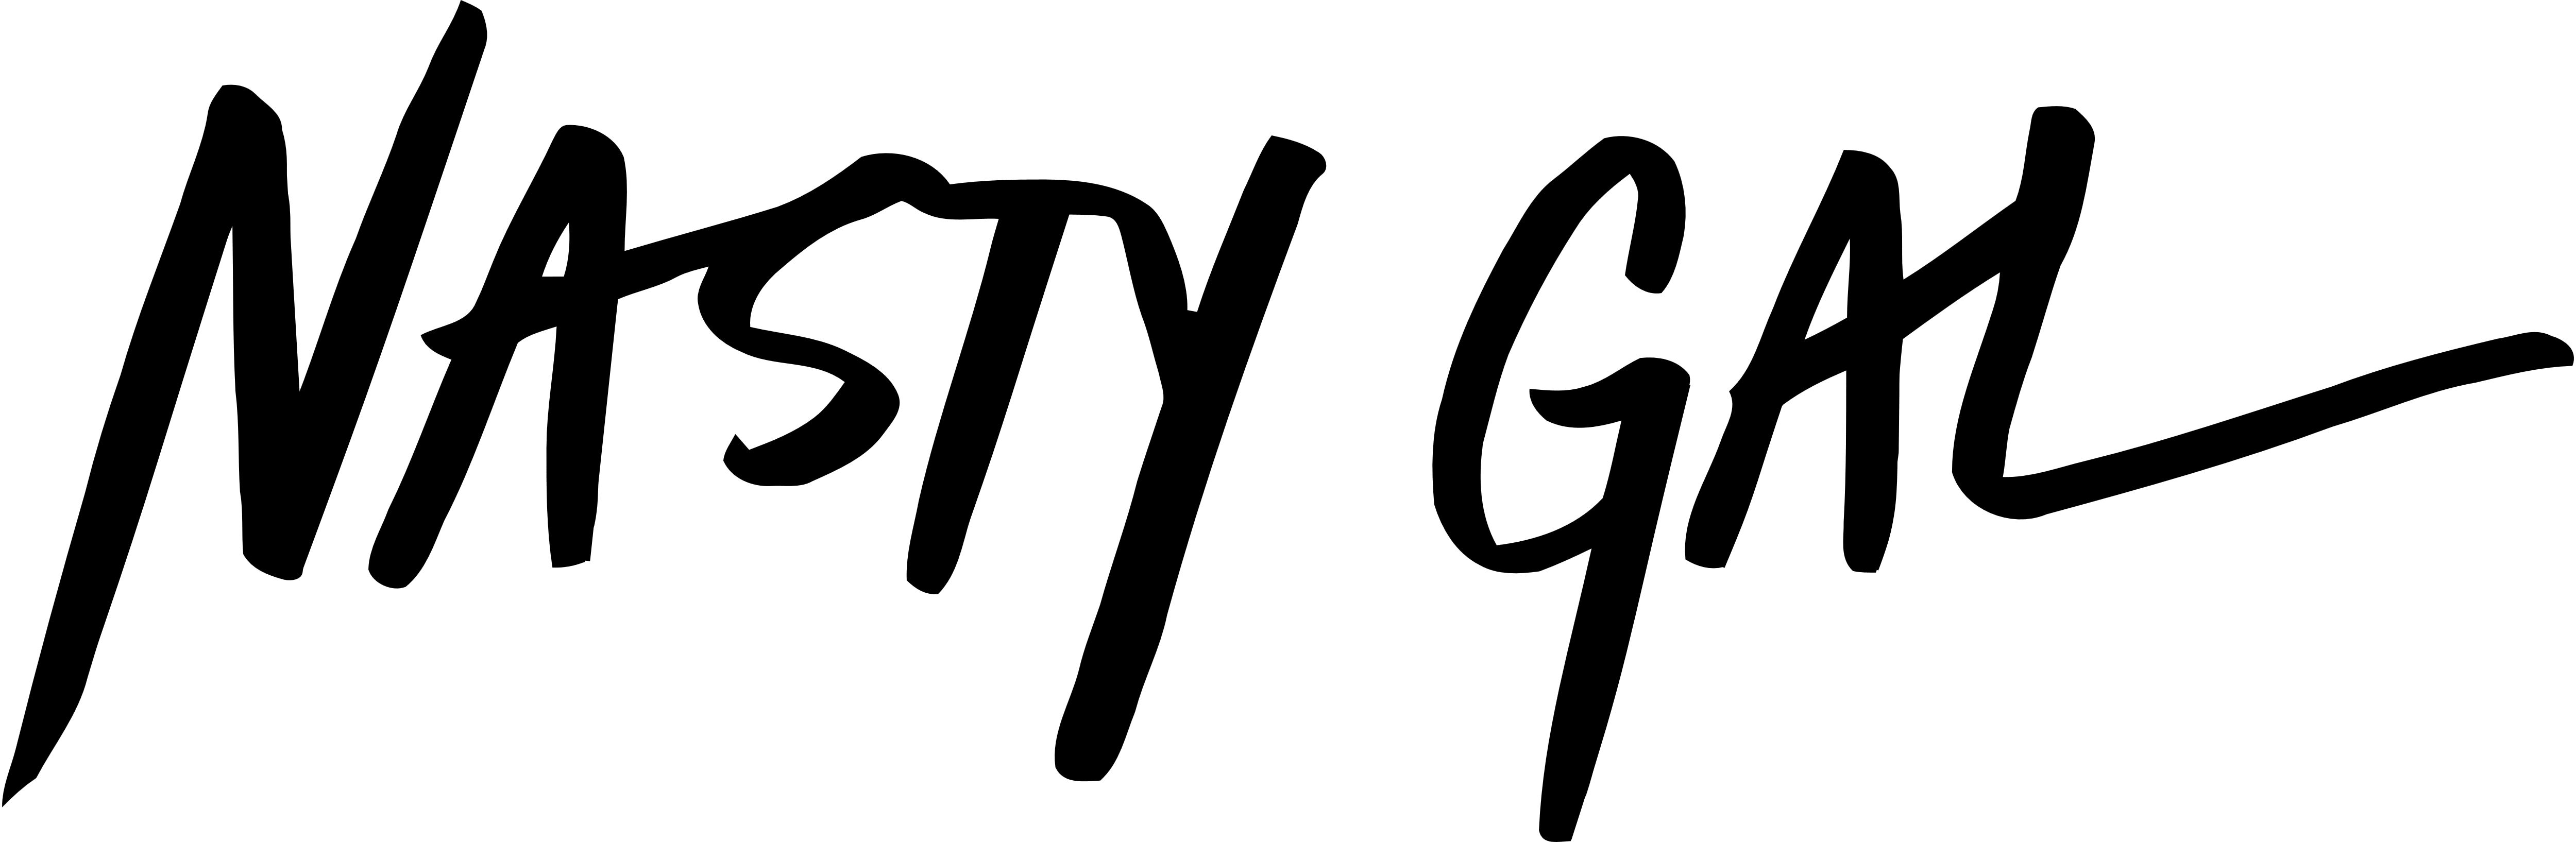 Nasty Logo - Nasty Gal – Logos Download